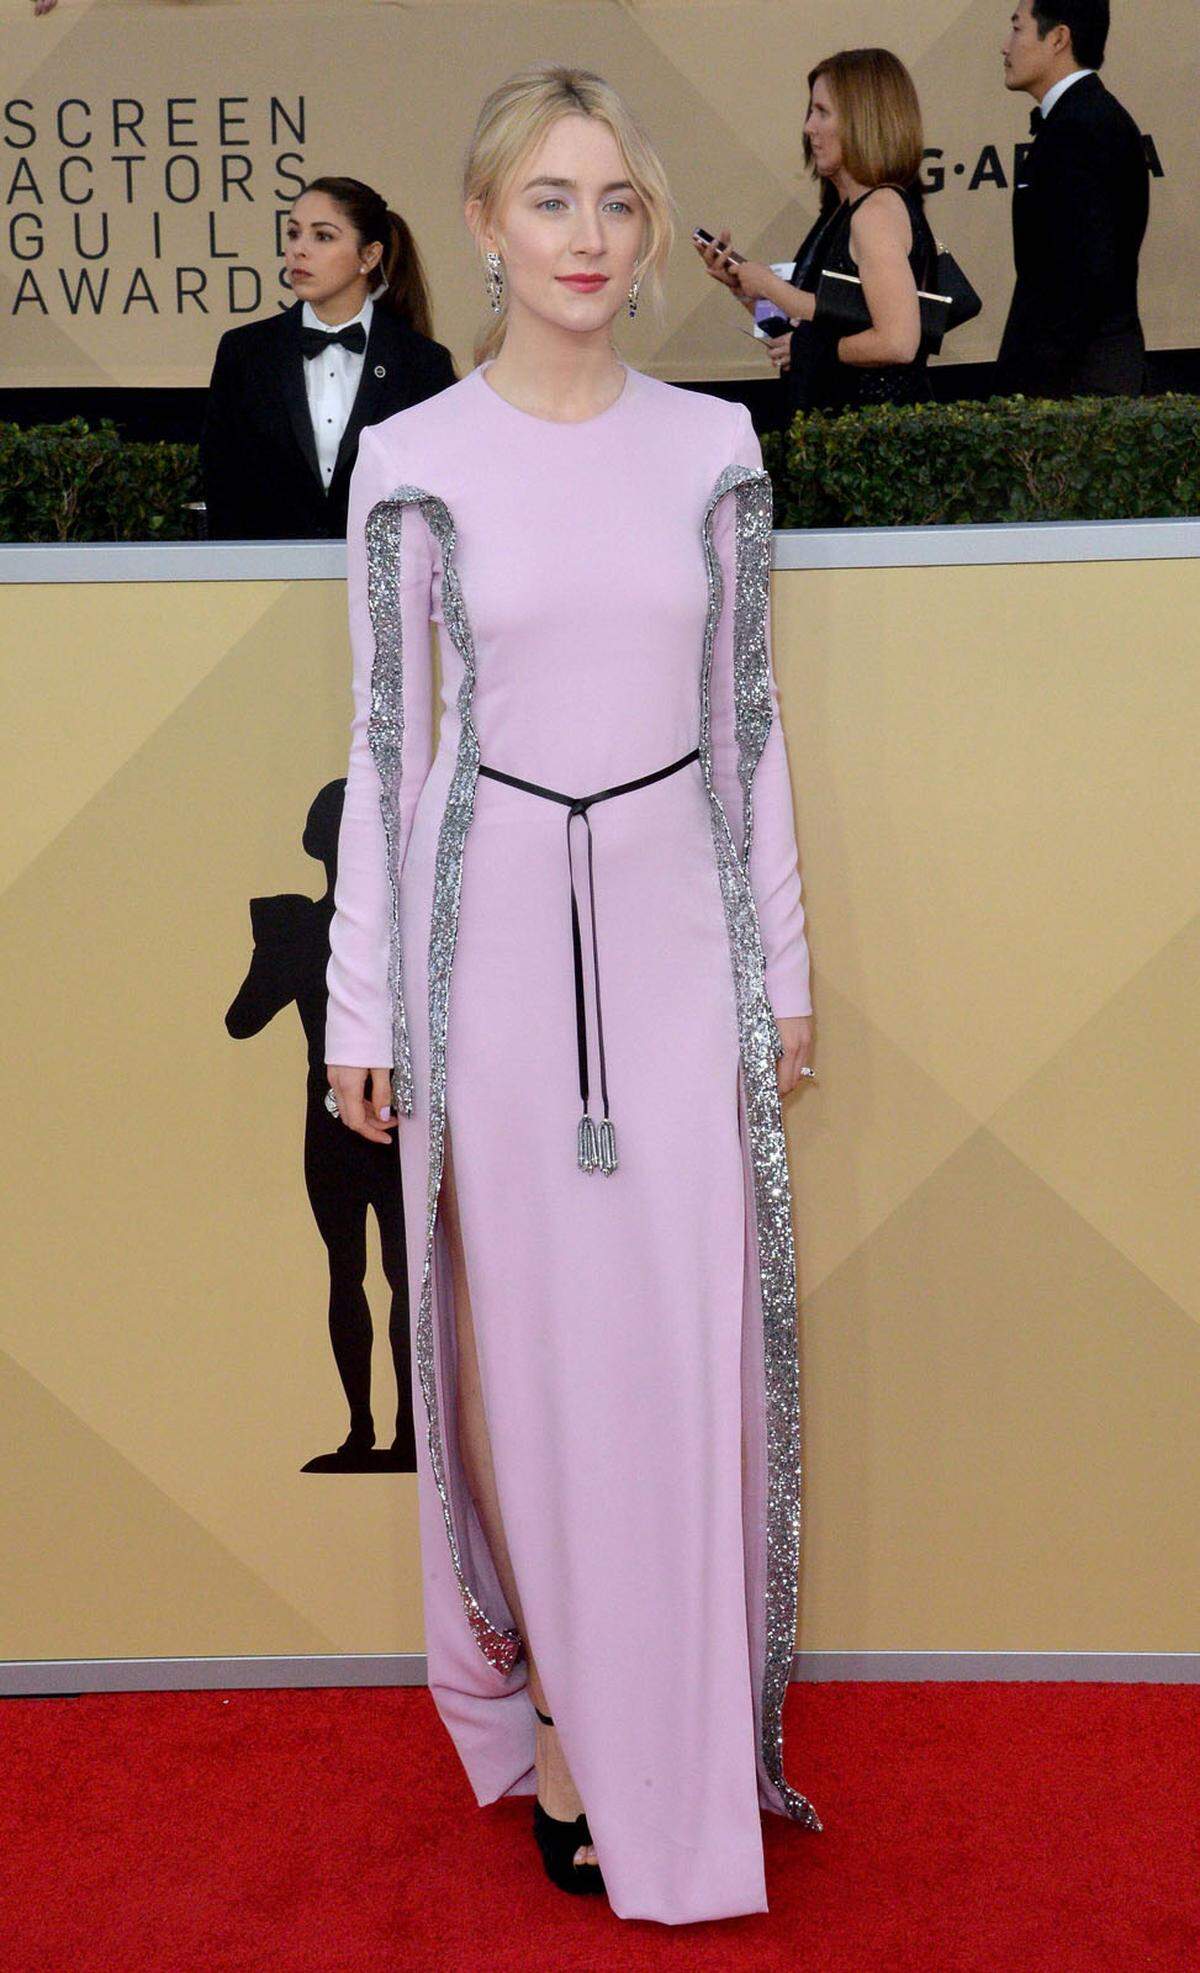 Pinke Akzente und Glitzer wählten viele der Stars. Saoirse Ronan in einer Spezialanfertigung von Louis Vuitton gleich beides.